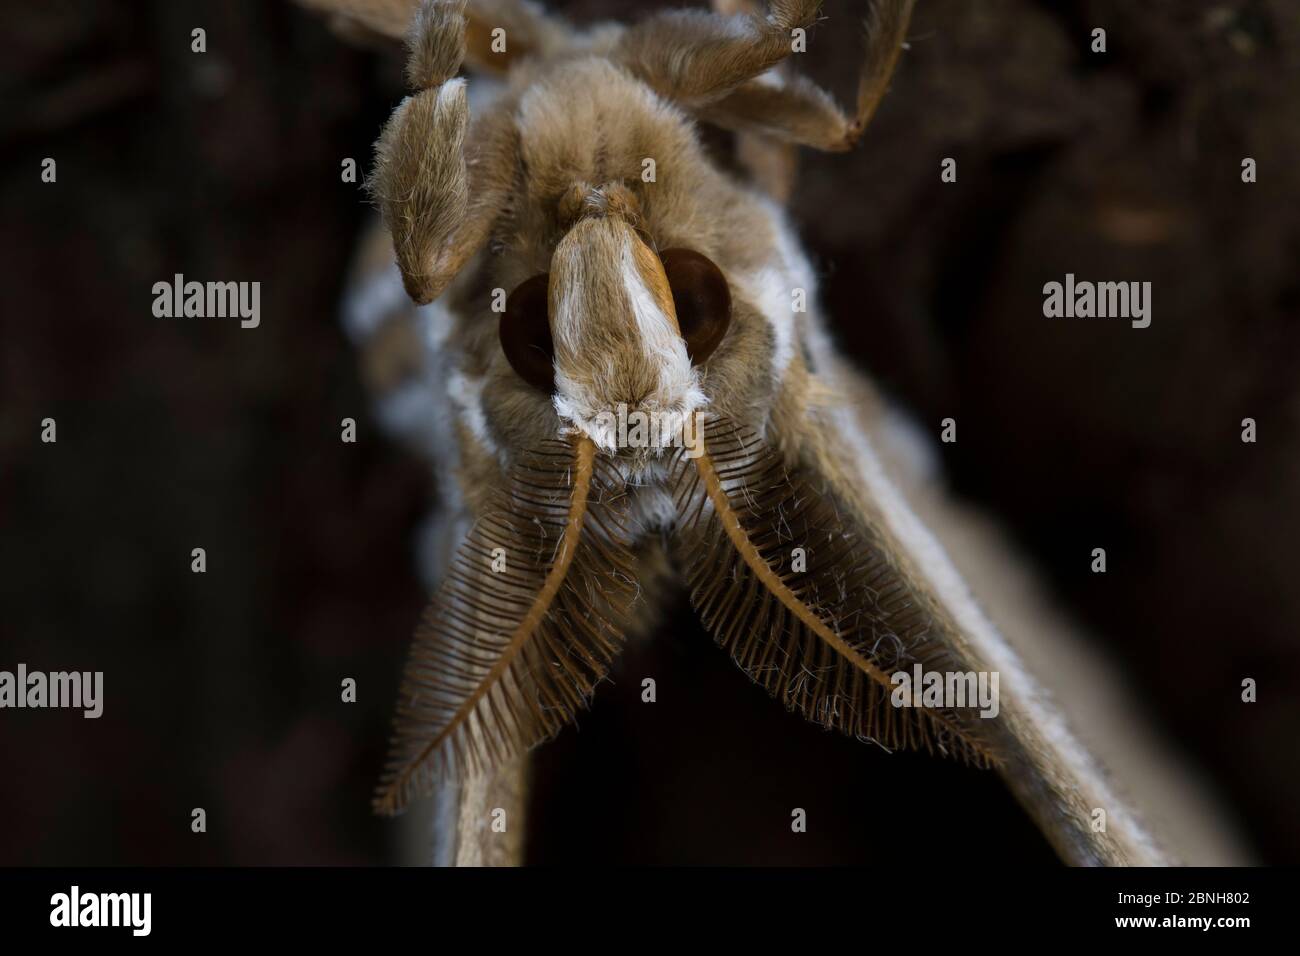 Ailanthus silkmoth (Samia cynthia) une espèce introduite, portrait en gros plan, France Banque D'Images